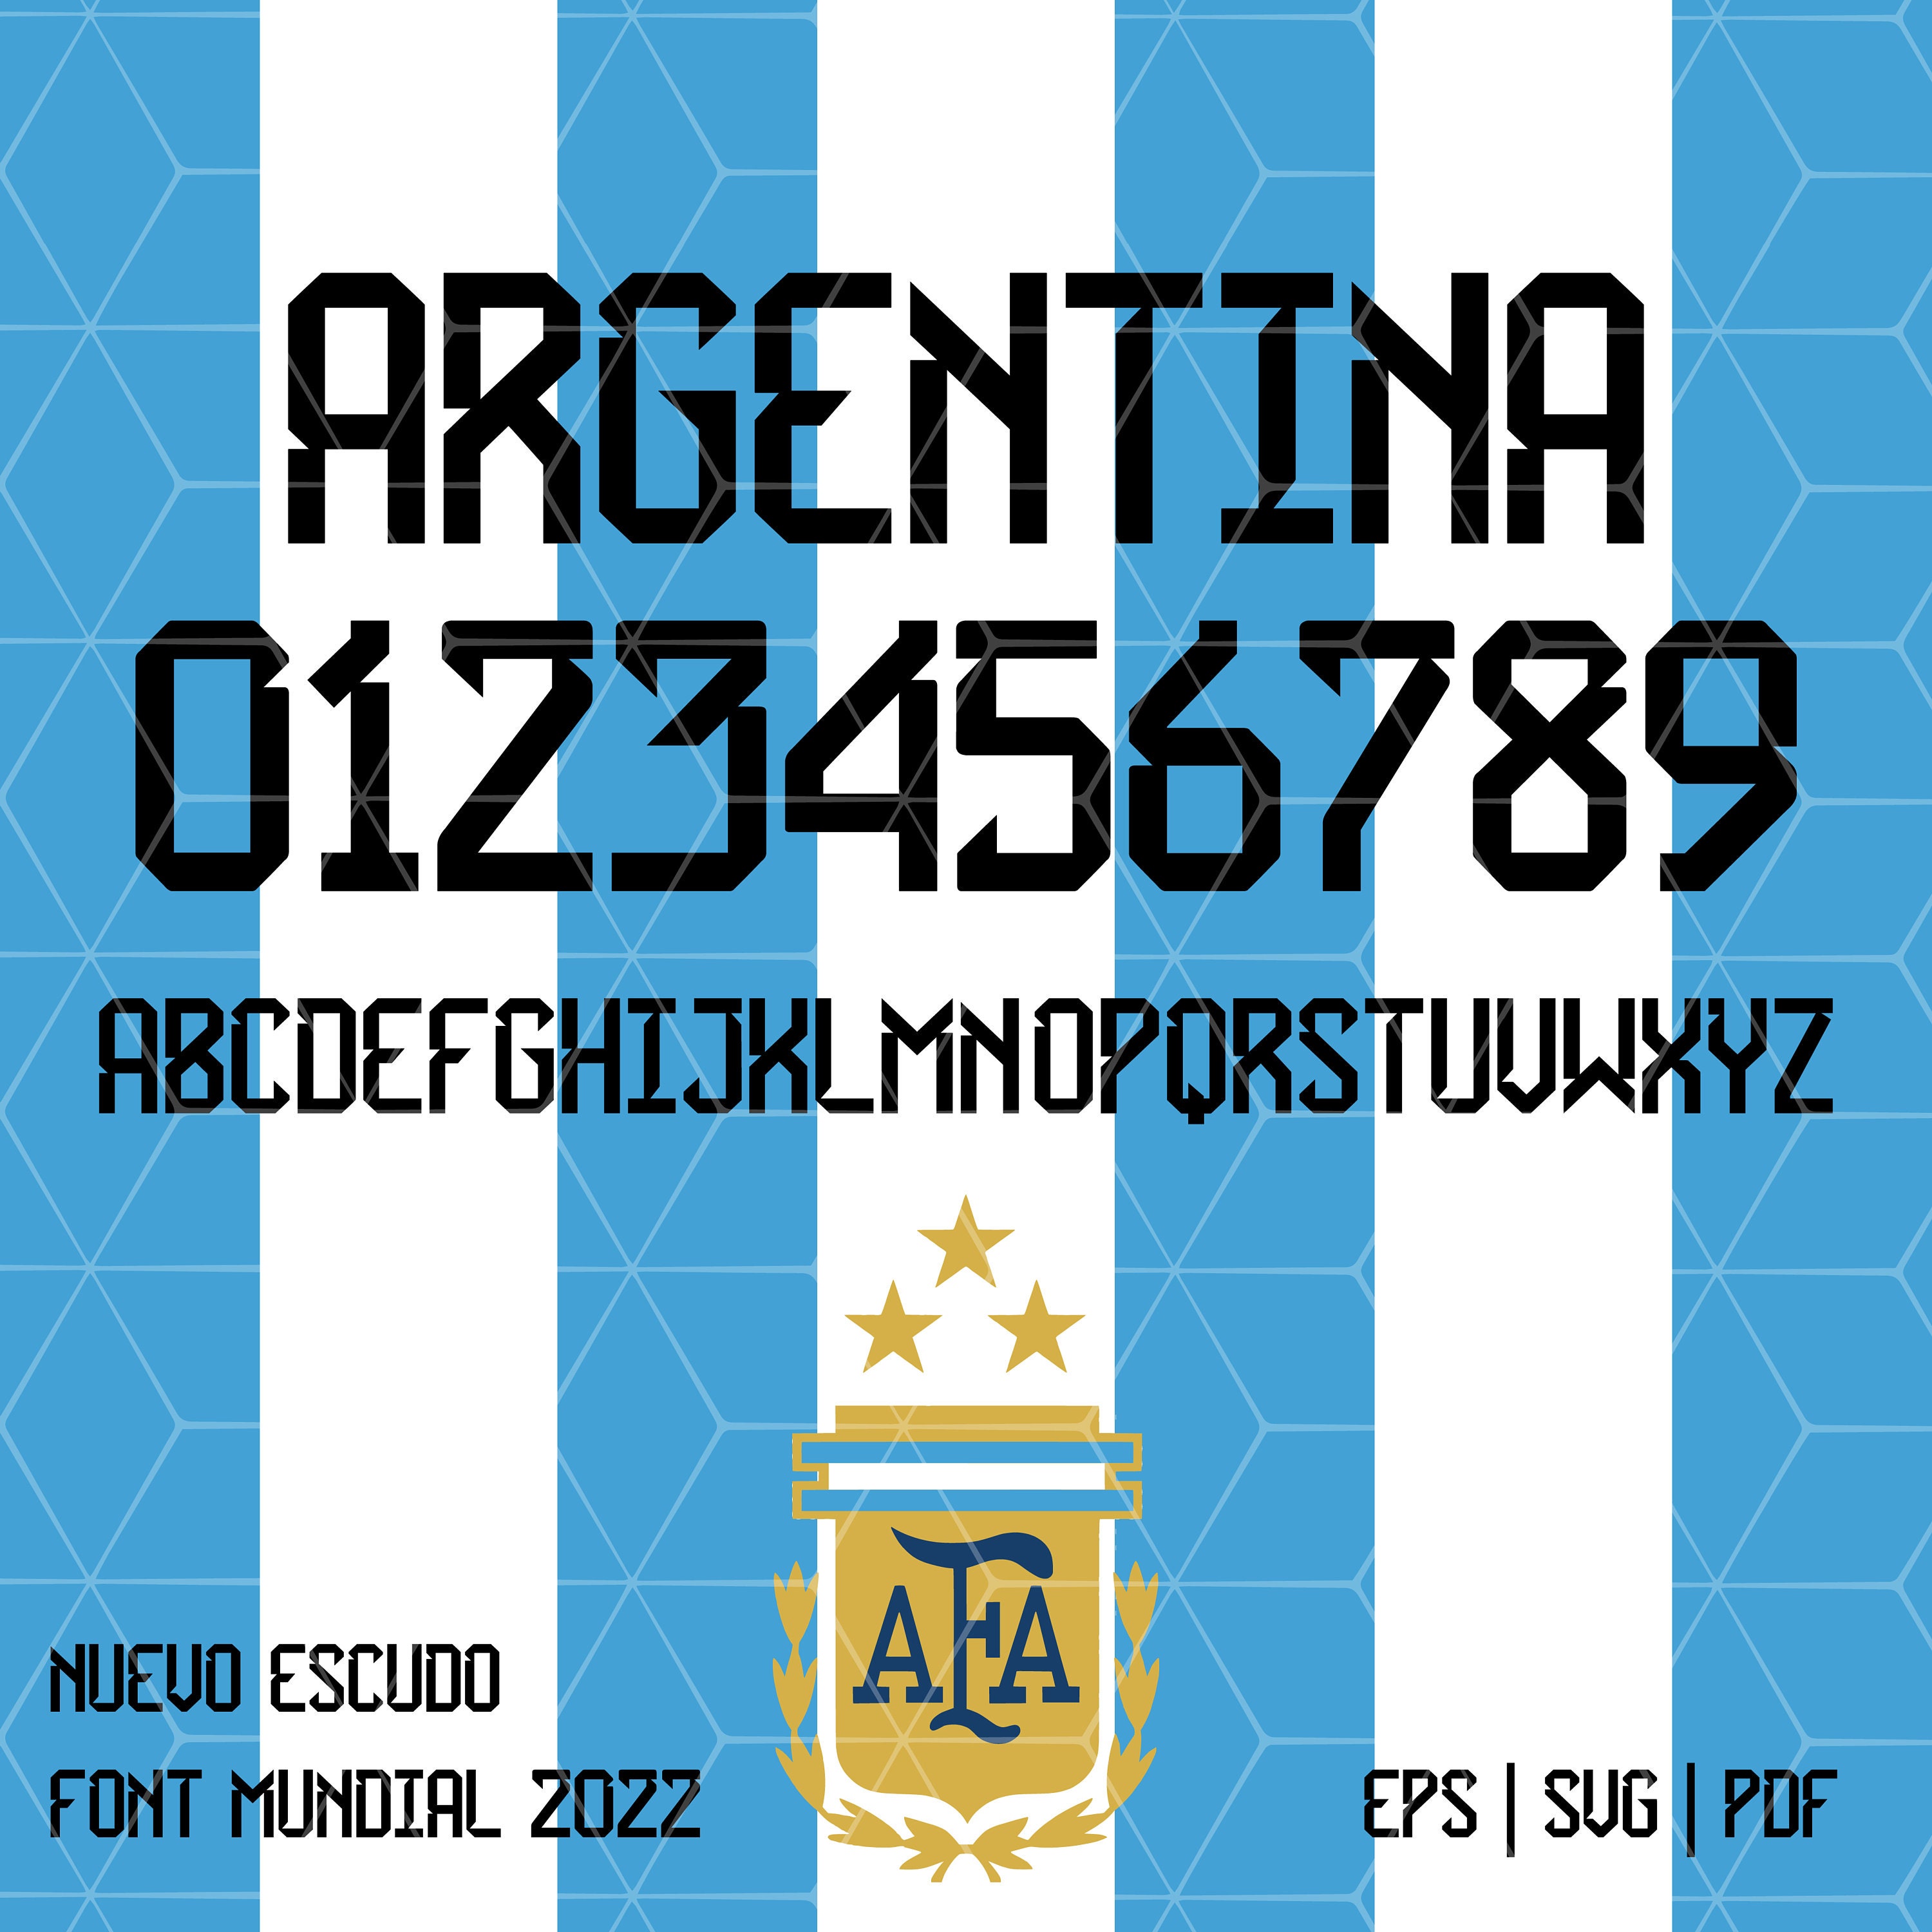 broche deportes. fútbol. escudo equipo argentin - Buy Football